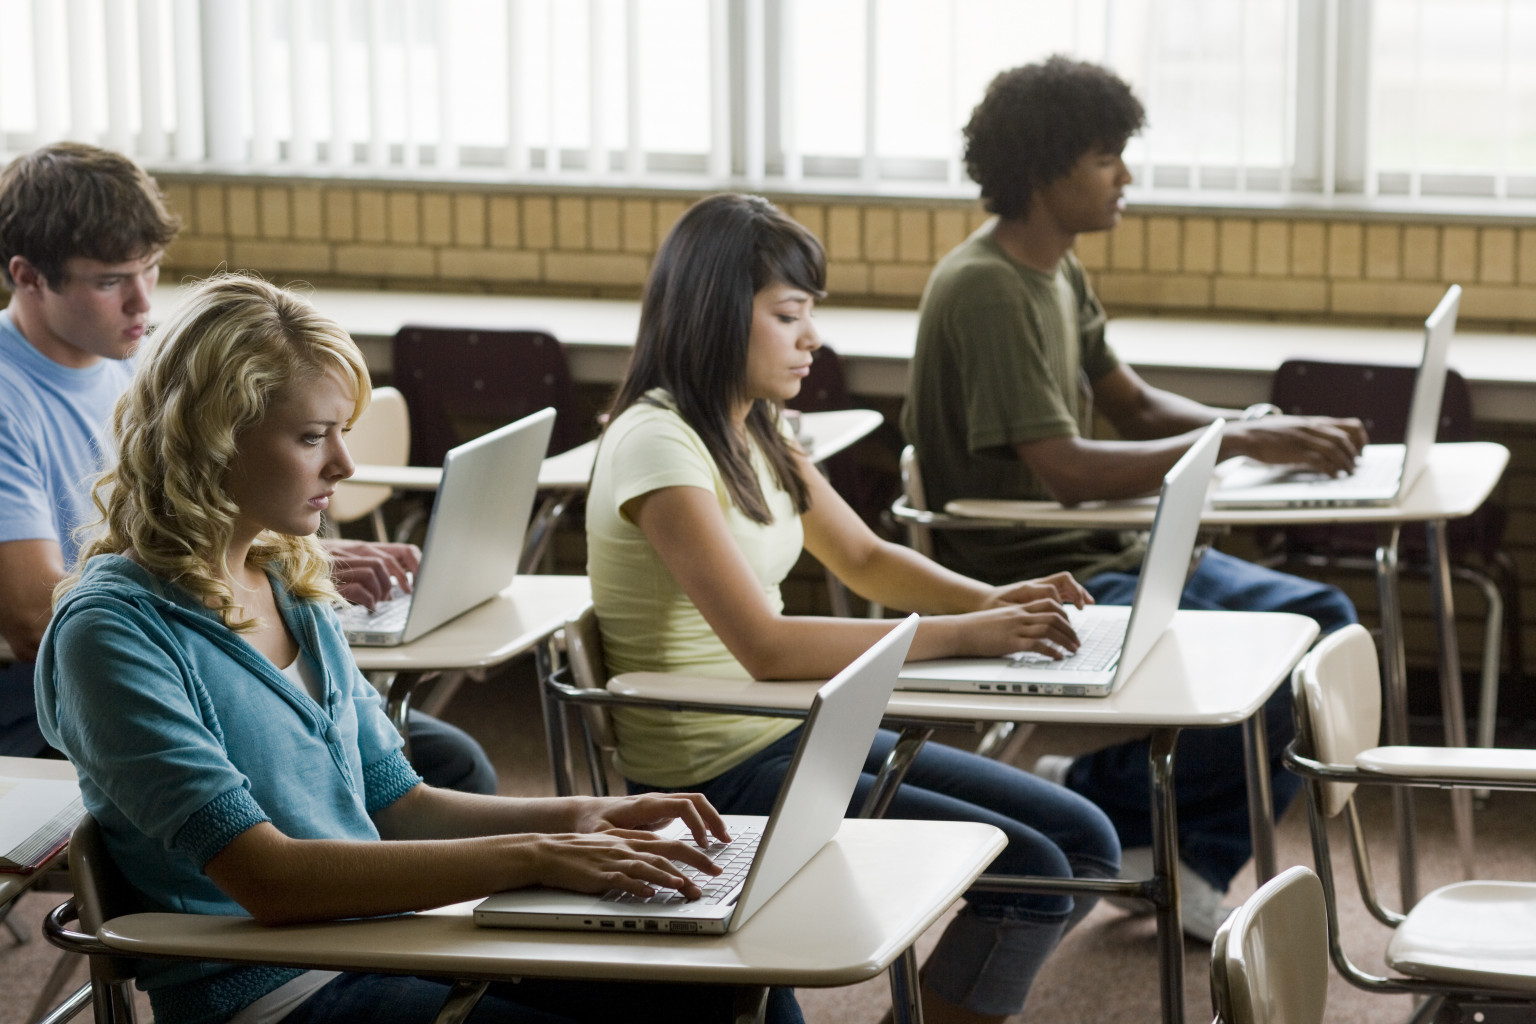 New work student. Студент с ноутбуком. Иностранные студенты за ноутбуком. Ученик с ноутбуком. Студенты за компьютерным столом.